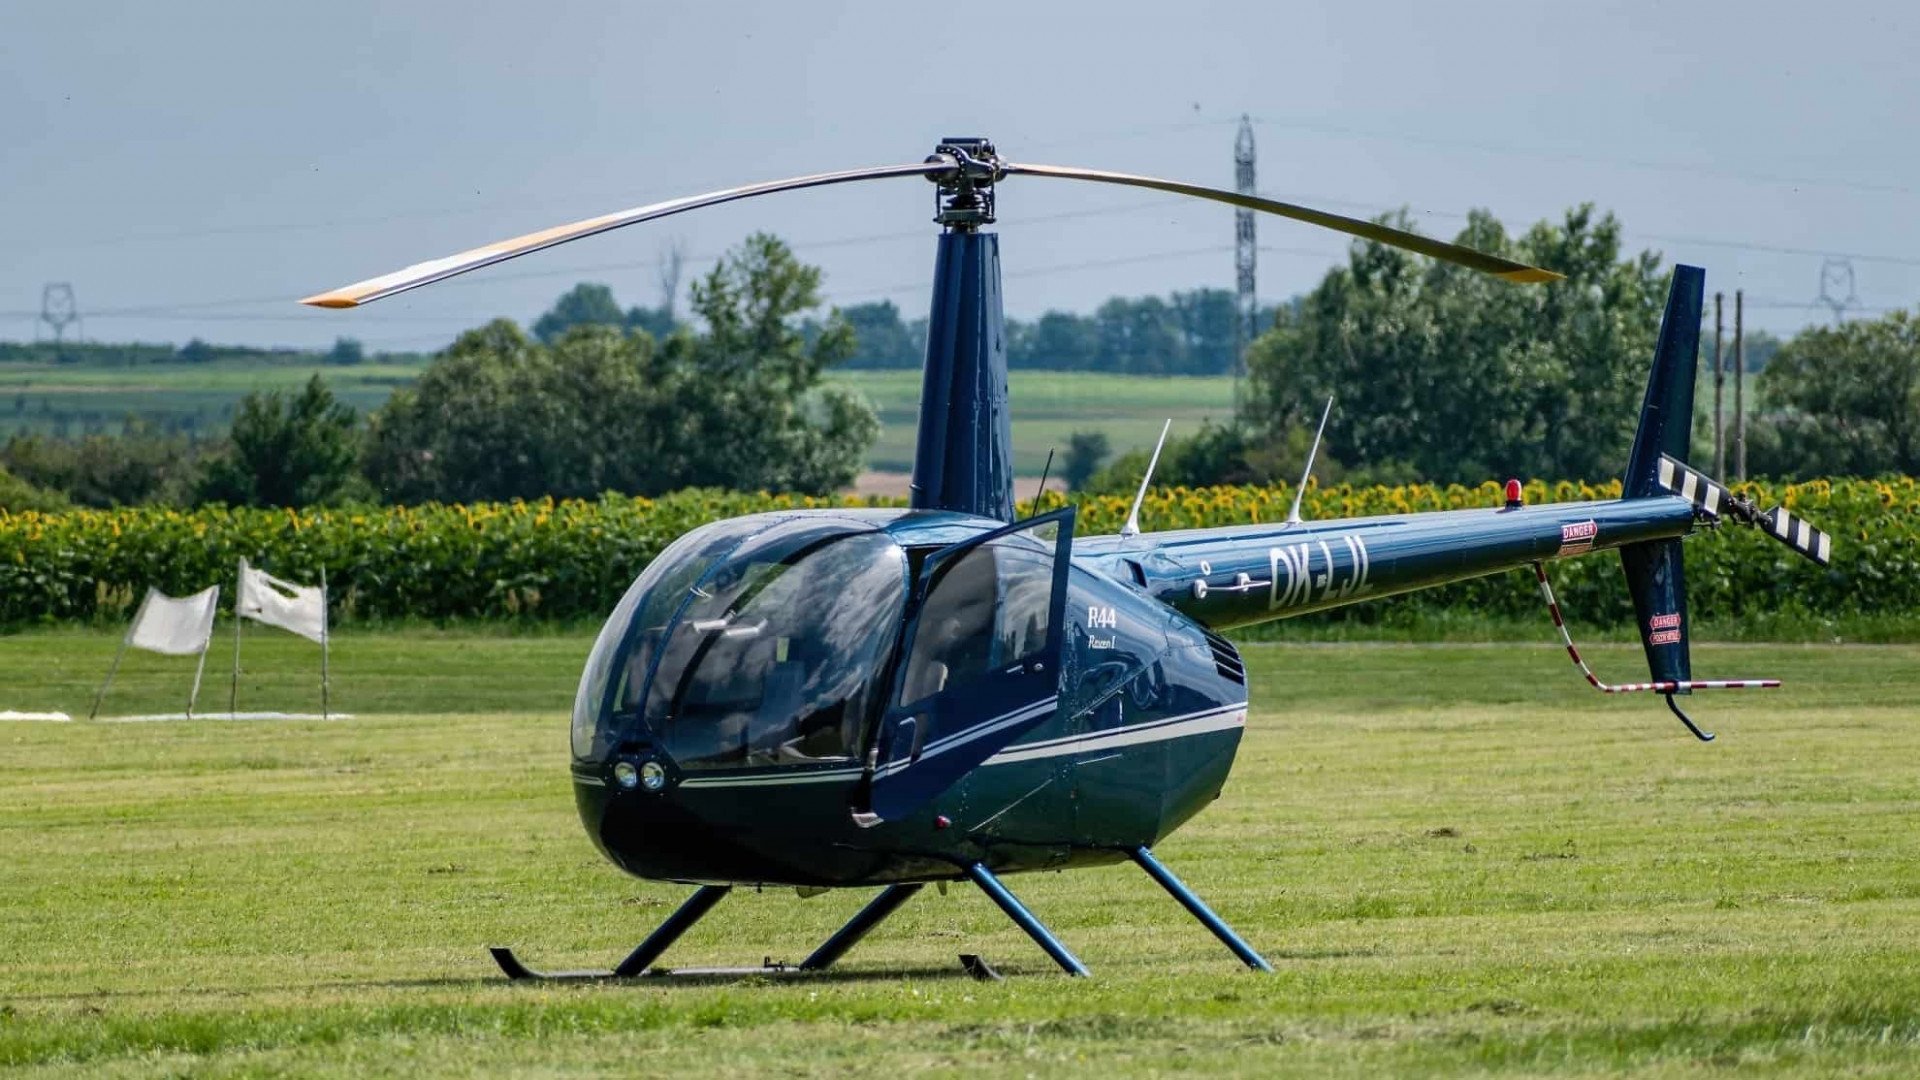 R44, modelo do helicóptero desaparecido - Reprodução